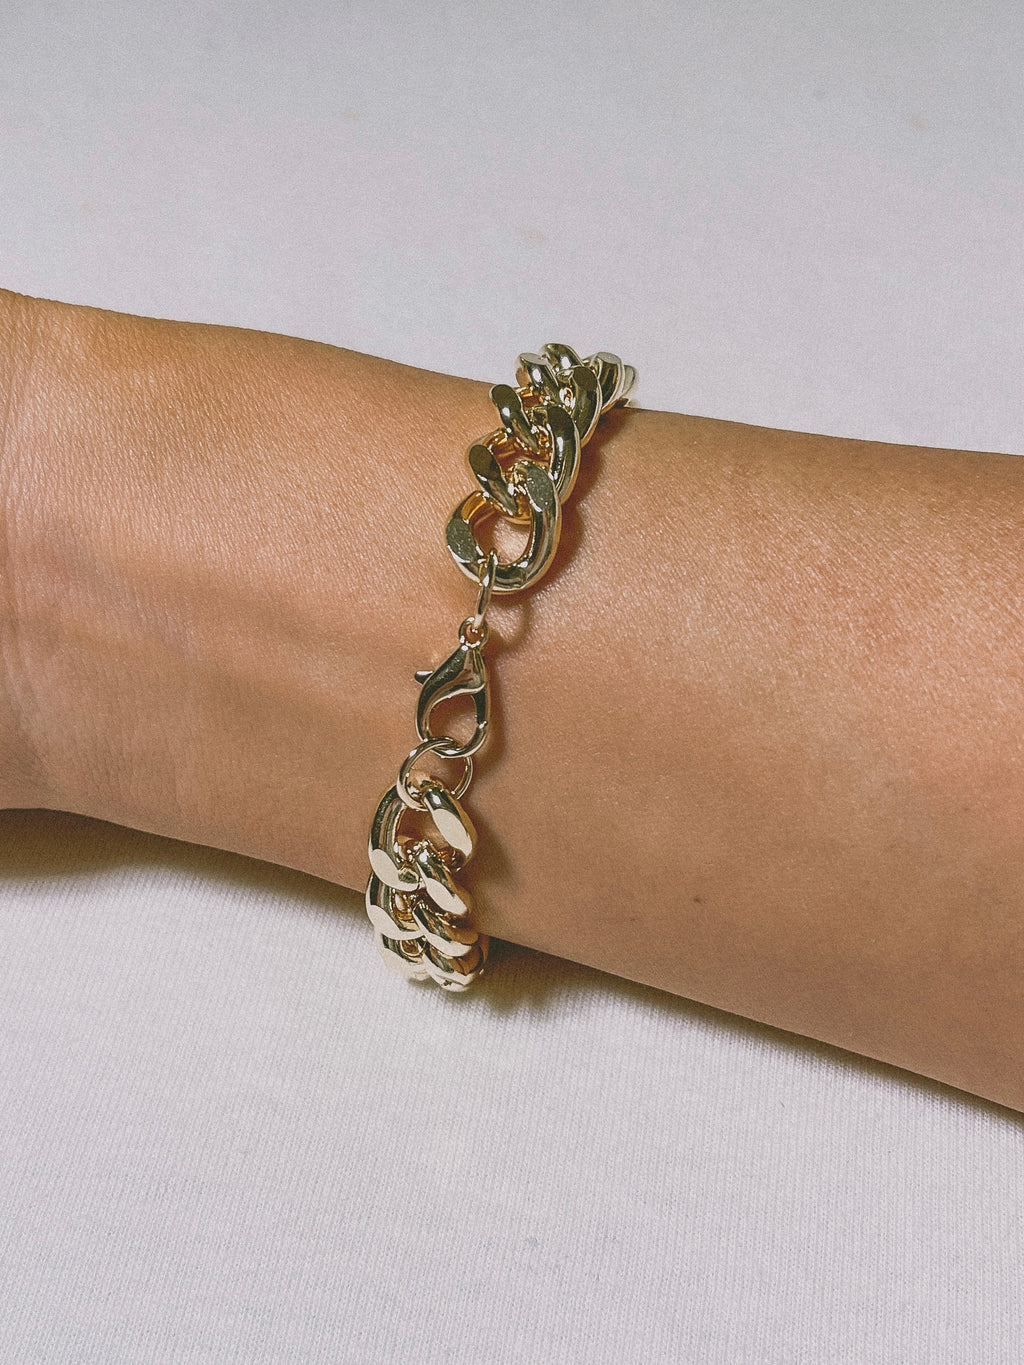 Charlotte Gold Chain Bracelet